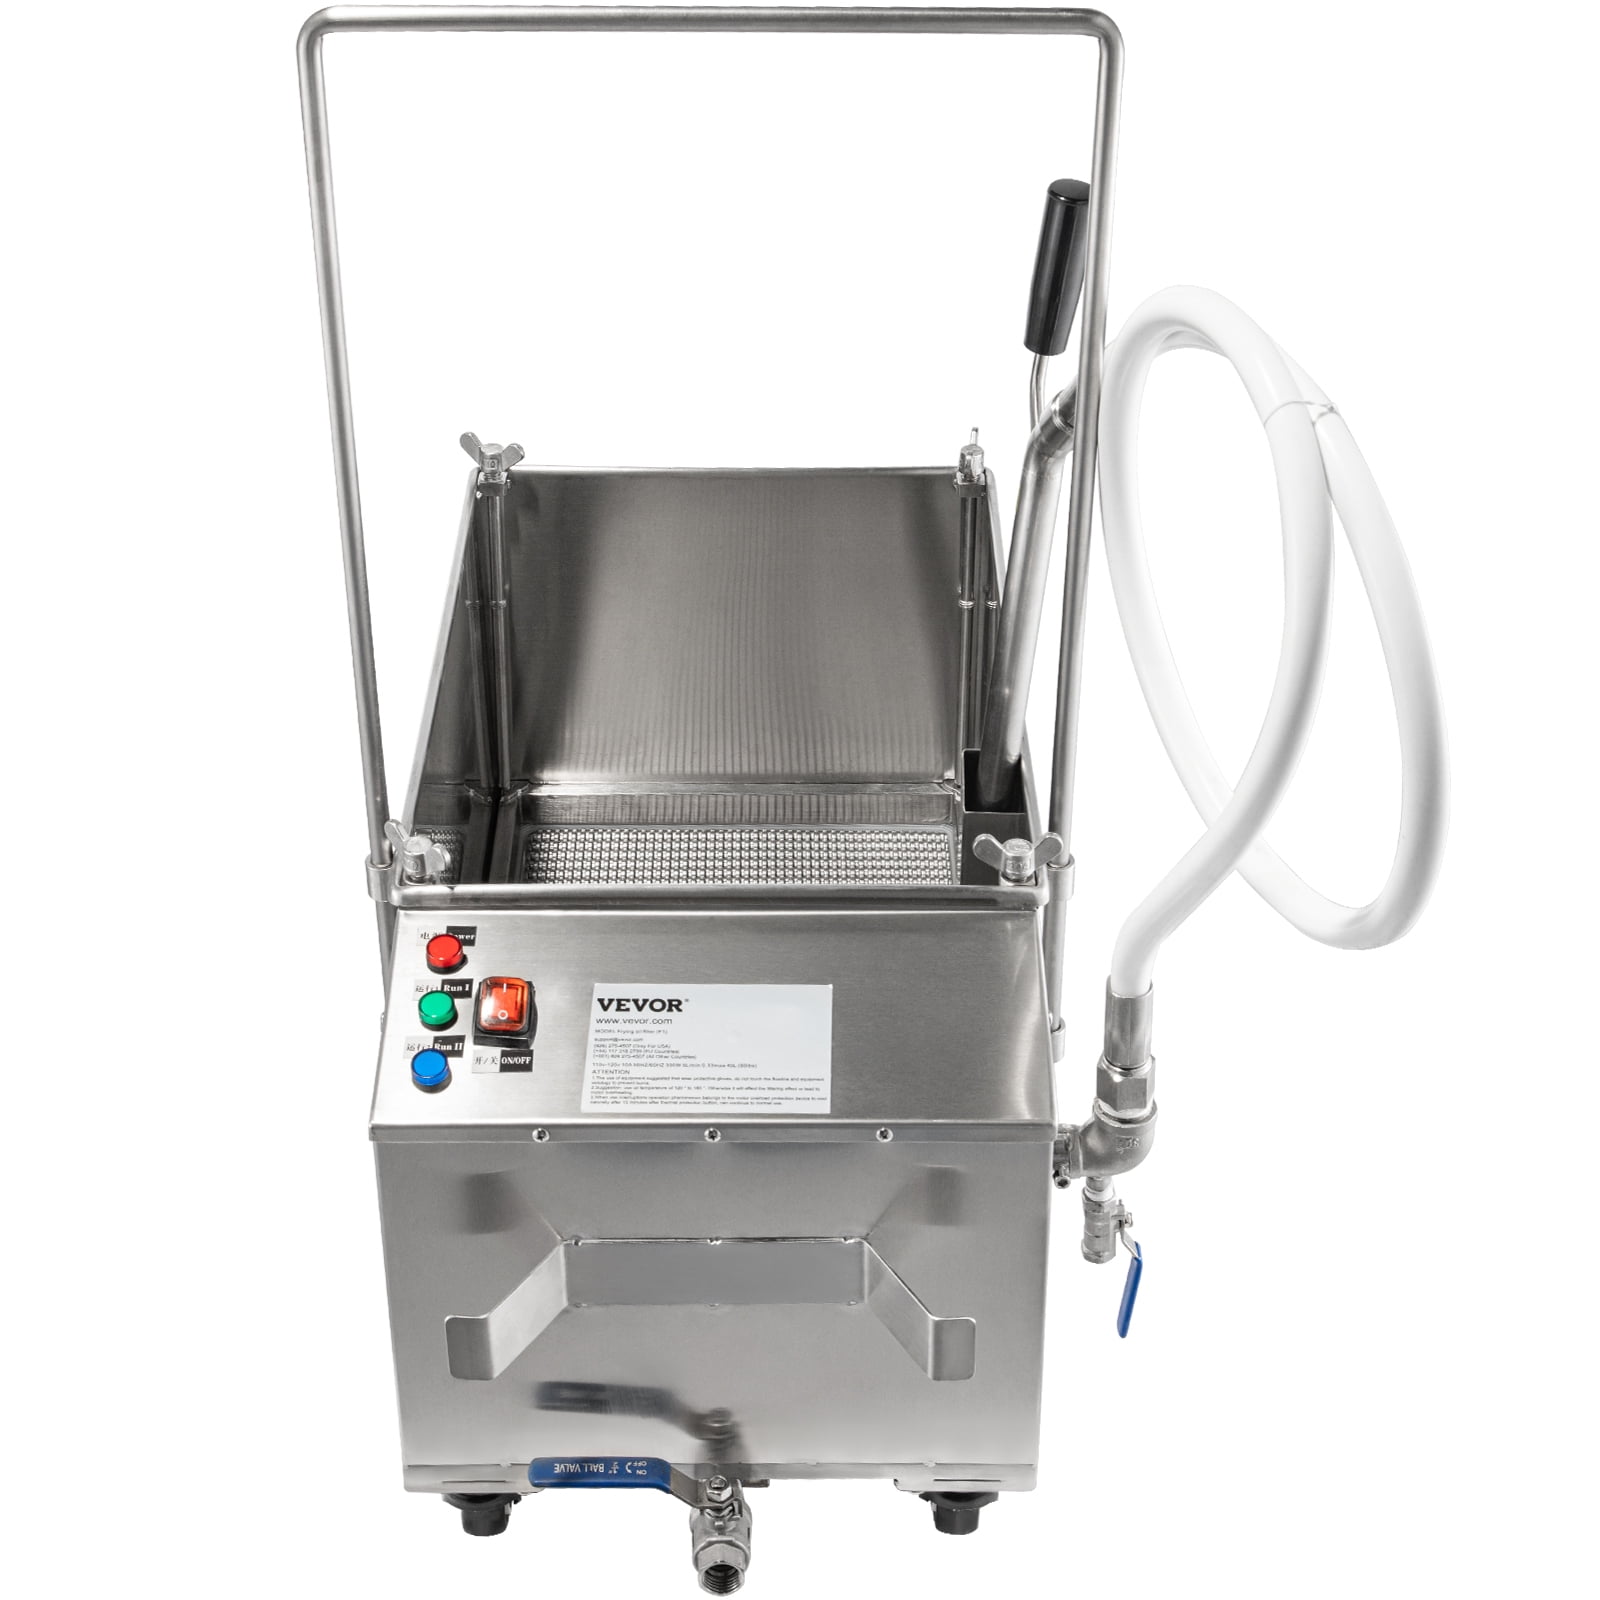 VEVOR Fryer Oil Filter 80 lbs/40L/10.56 Gallon Capacity Commercial Cooking  Oil Filtration System 300W 110V/60Hz 